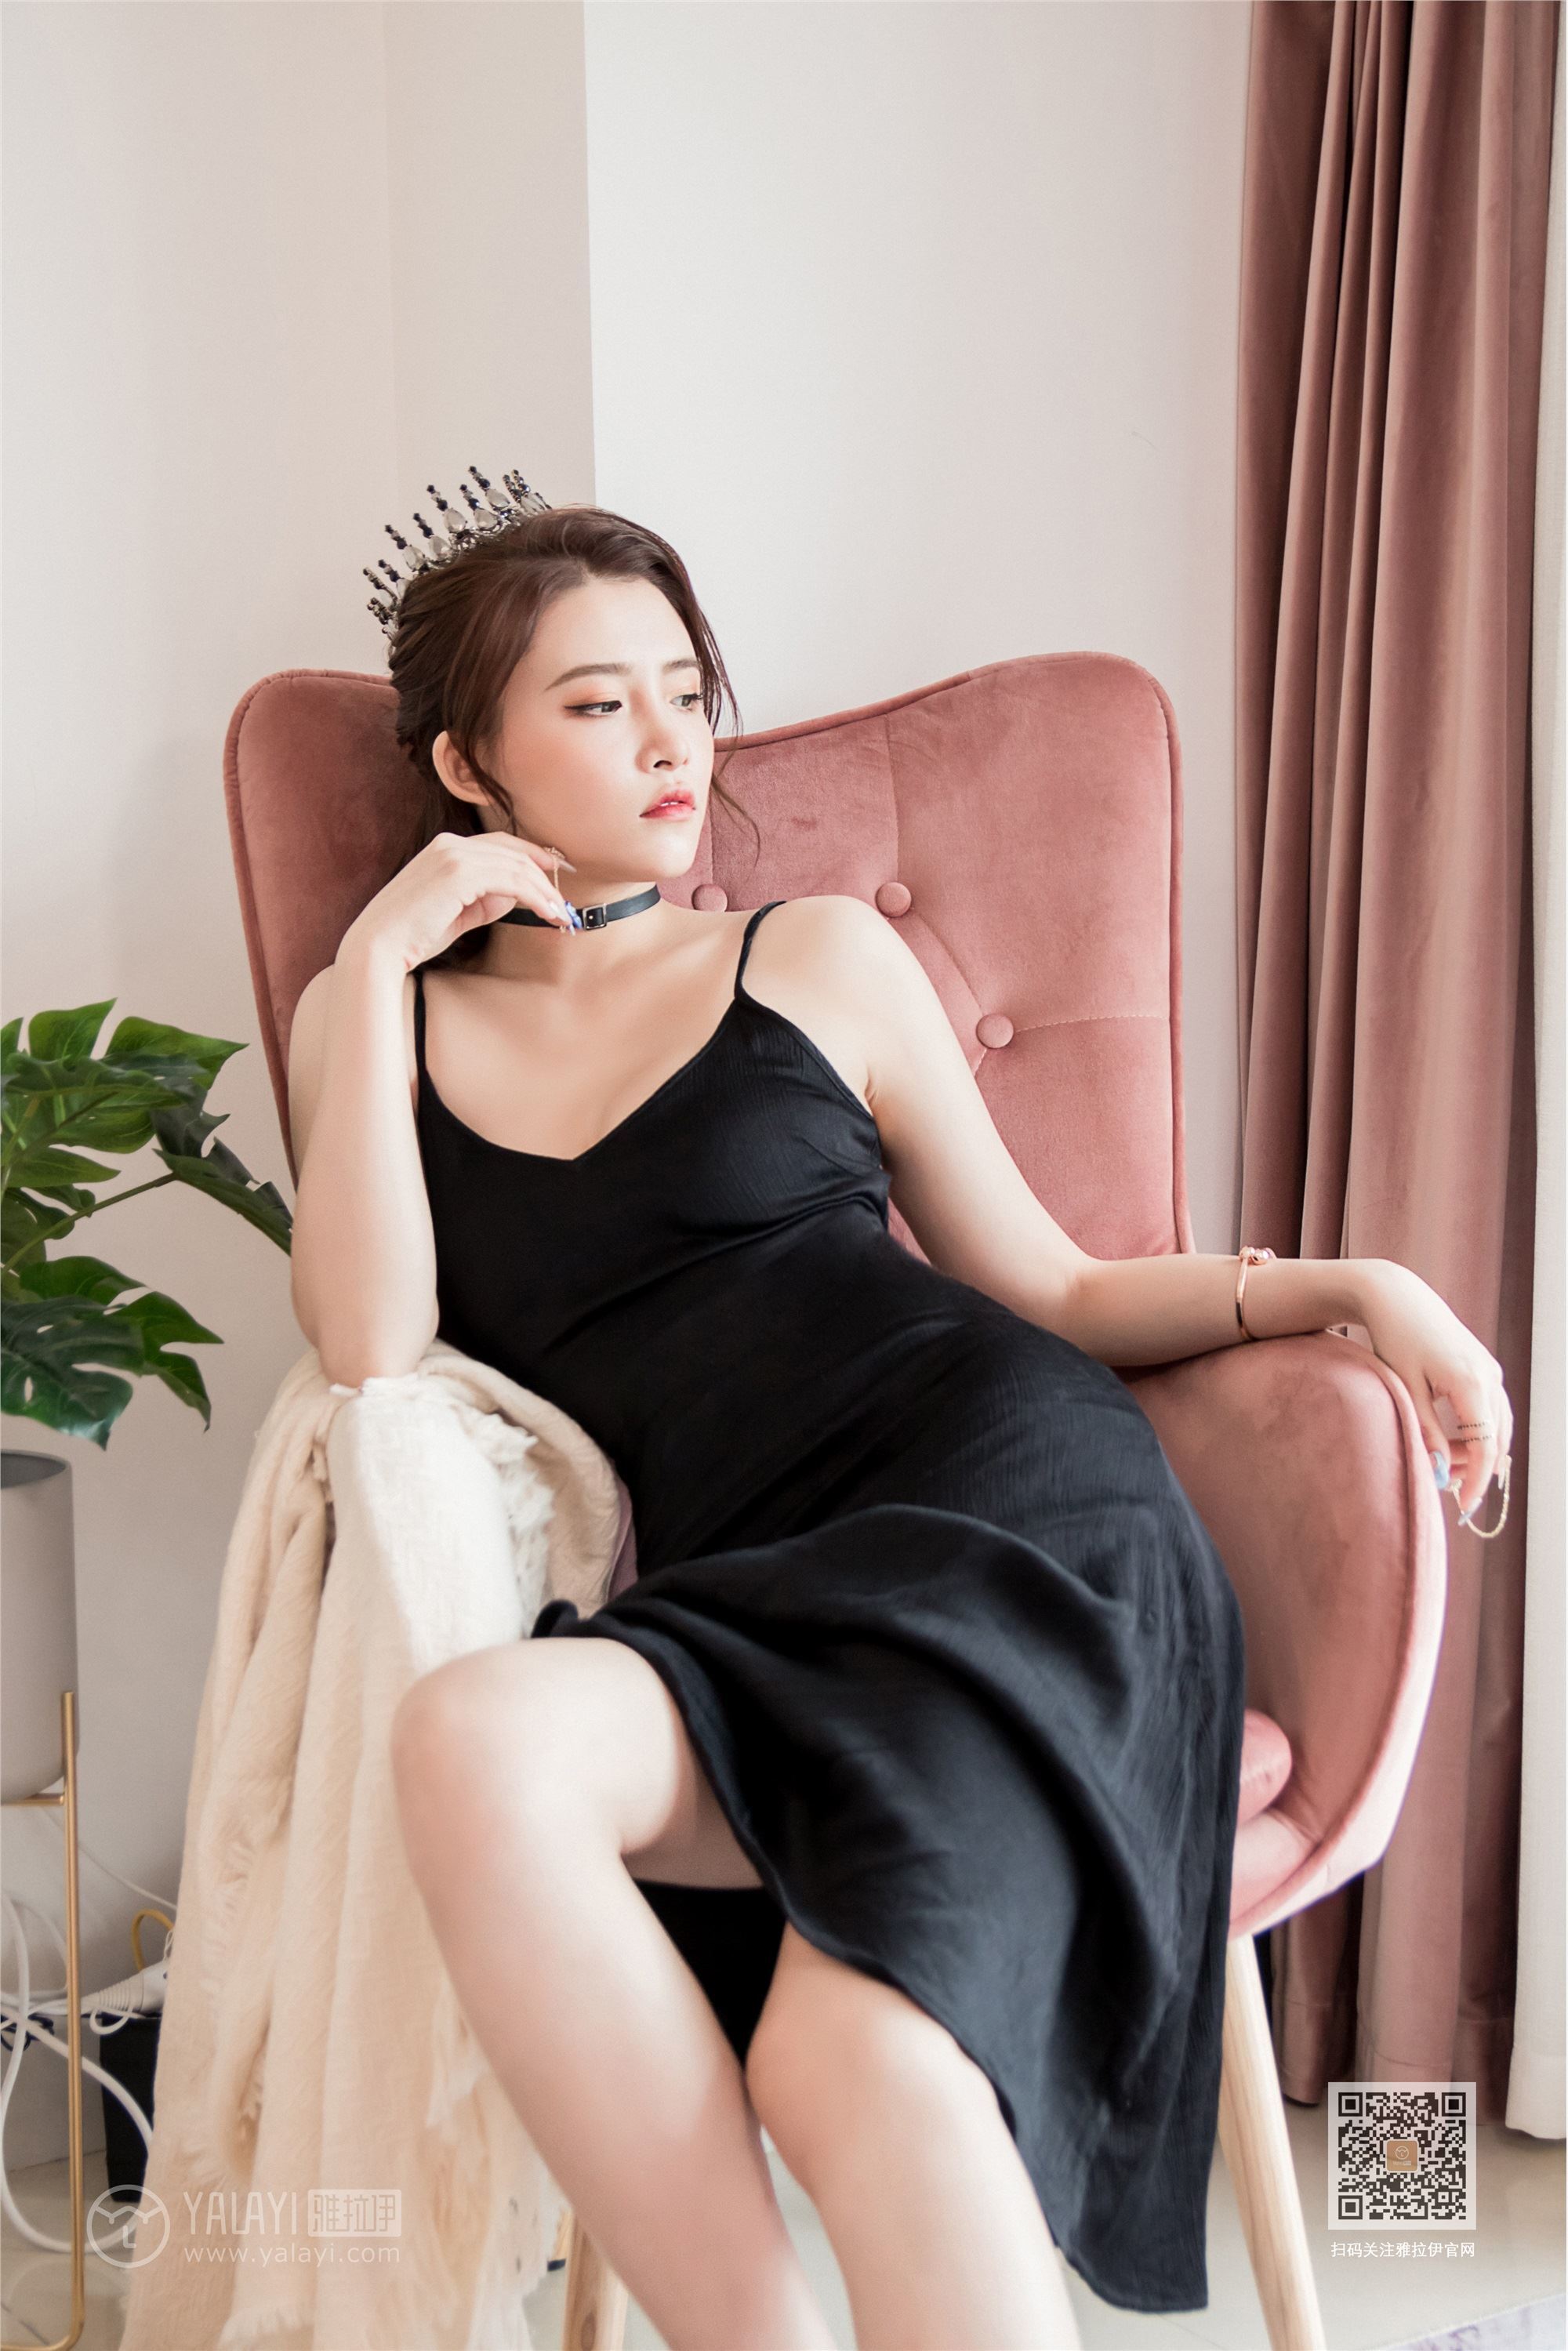 Yalayi yalayi 2020.01.19 y524 my queen by Zhao Jie